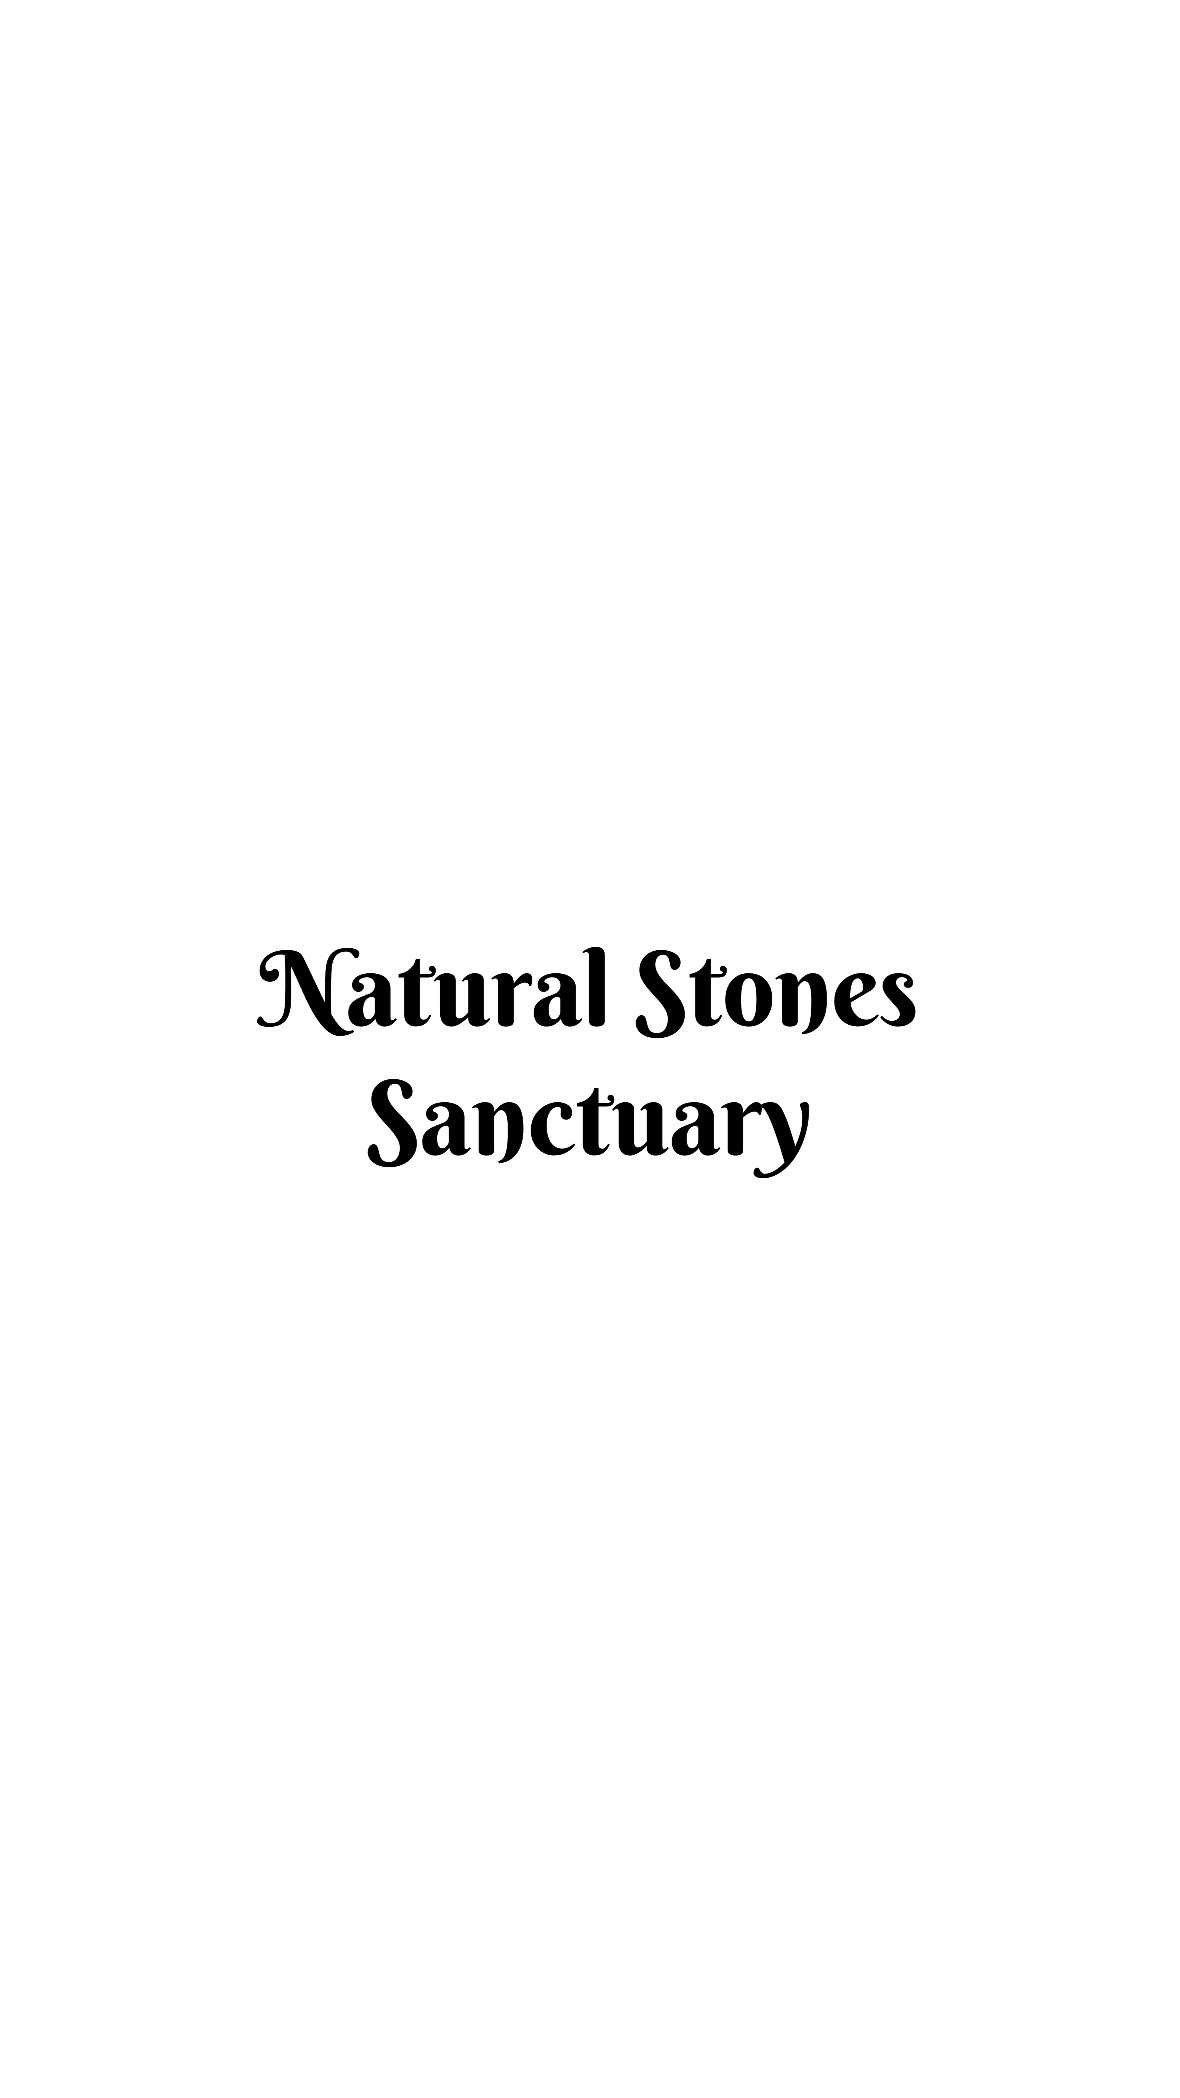 🏡നാച്ചുറൽ സ്റ്റോൺ കൊണ്ട് മുറ്റം അതിമനോഹരമാക്കം | Natural Stone Paving Kerala | Tandur Stone |

Our Details

Natural Stone Sanctuary

Contact Number : 7561001922
www.naturalstonessanctuary.com
info.naturalstonessanctuary@gmail.com

Tags
#naturalstones #landscaping #courtyard #tandurstone #bangalorestone #kadappastone #cobblestone #pebblesgarden #pebbles #naturalgrass #artificialgrass #gardenscapes #kerala #newhome #keralahomes #homedecor #naturalstonepavingkerala #naturalstone #naturalstonelaying #naturalstonepaving #kerala #landscape #home #malayalam #shorts #viral #trending #thodupuzha #idukki #hirange #kothamangalam #ernakulam #kottayam #palakkad #pala #muvattupuzha #adimaly #stones #stone #stonework #reels #business #budget #budgetfriendly #green #malayalam #malayali

malayalihomes 
keralahome 
keralahousebuilder
naturalstonepaving 
naturalstonelaying
naturalstonepavingkerala
naturalstonelayingkerala
landscapingideas 
landscaping
courtyard
BangaloreStone
tandurstone
kadappastone
co